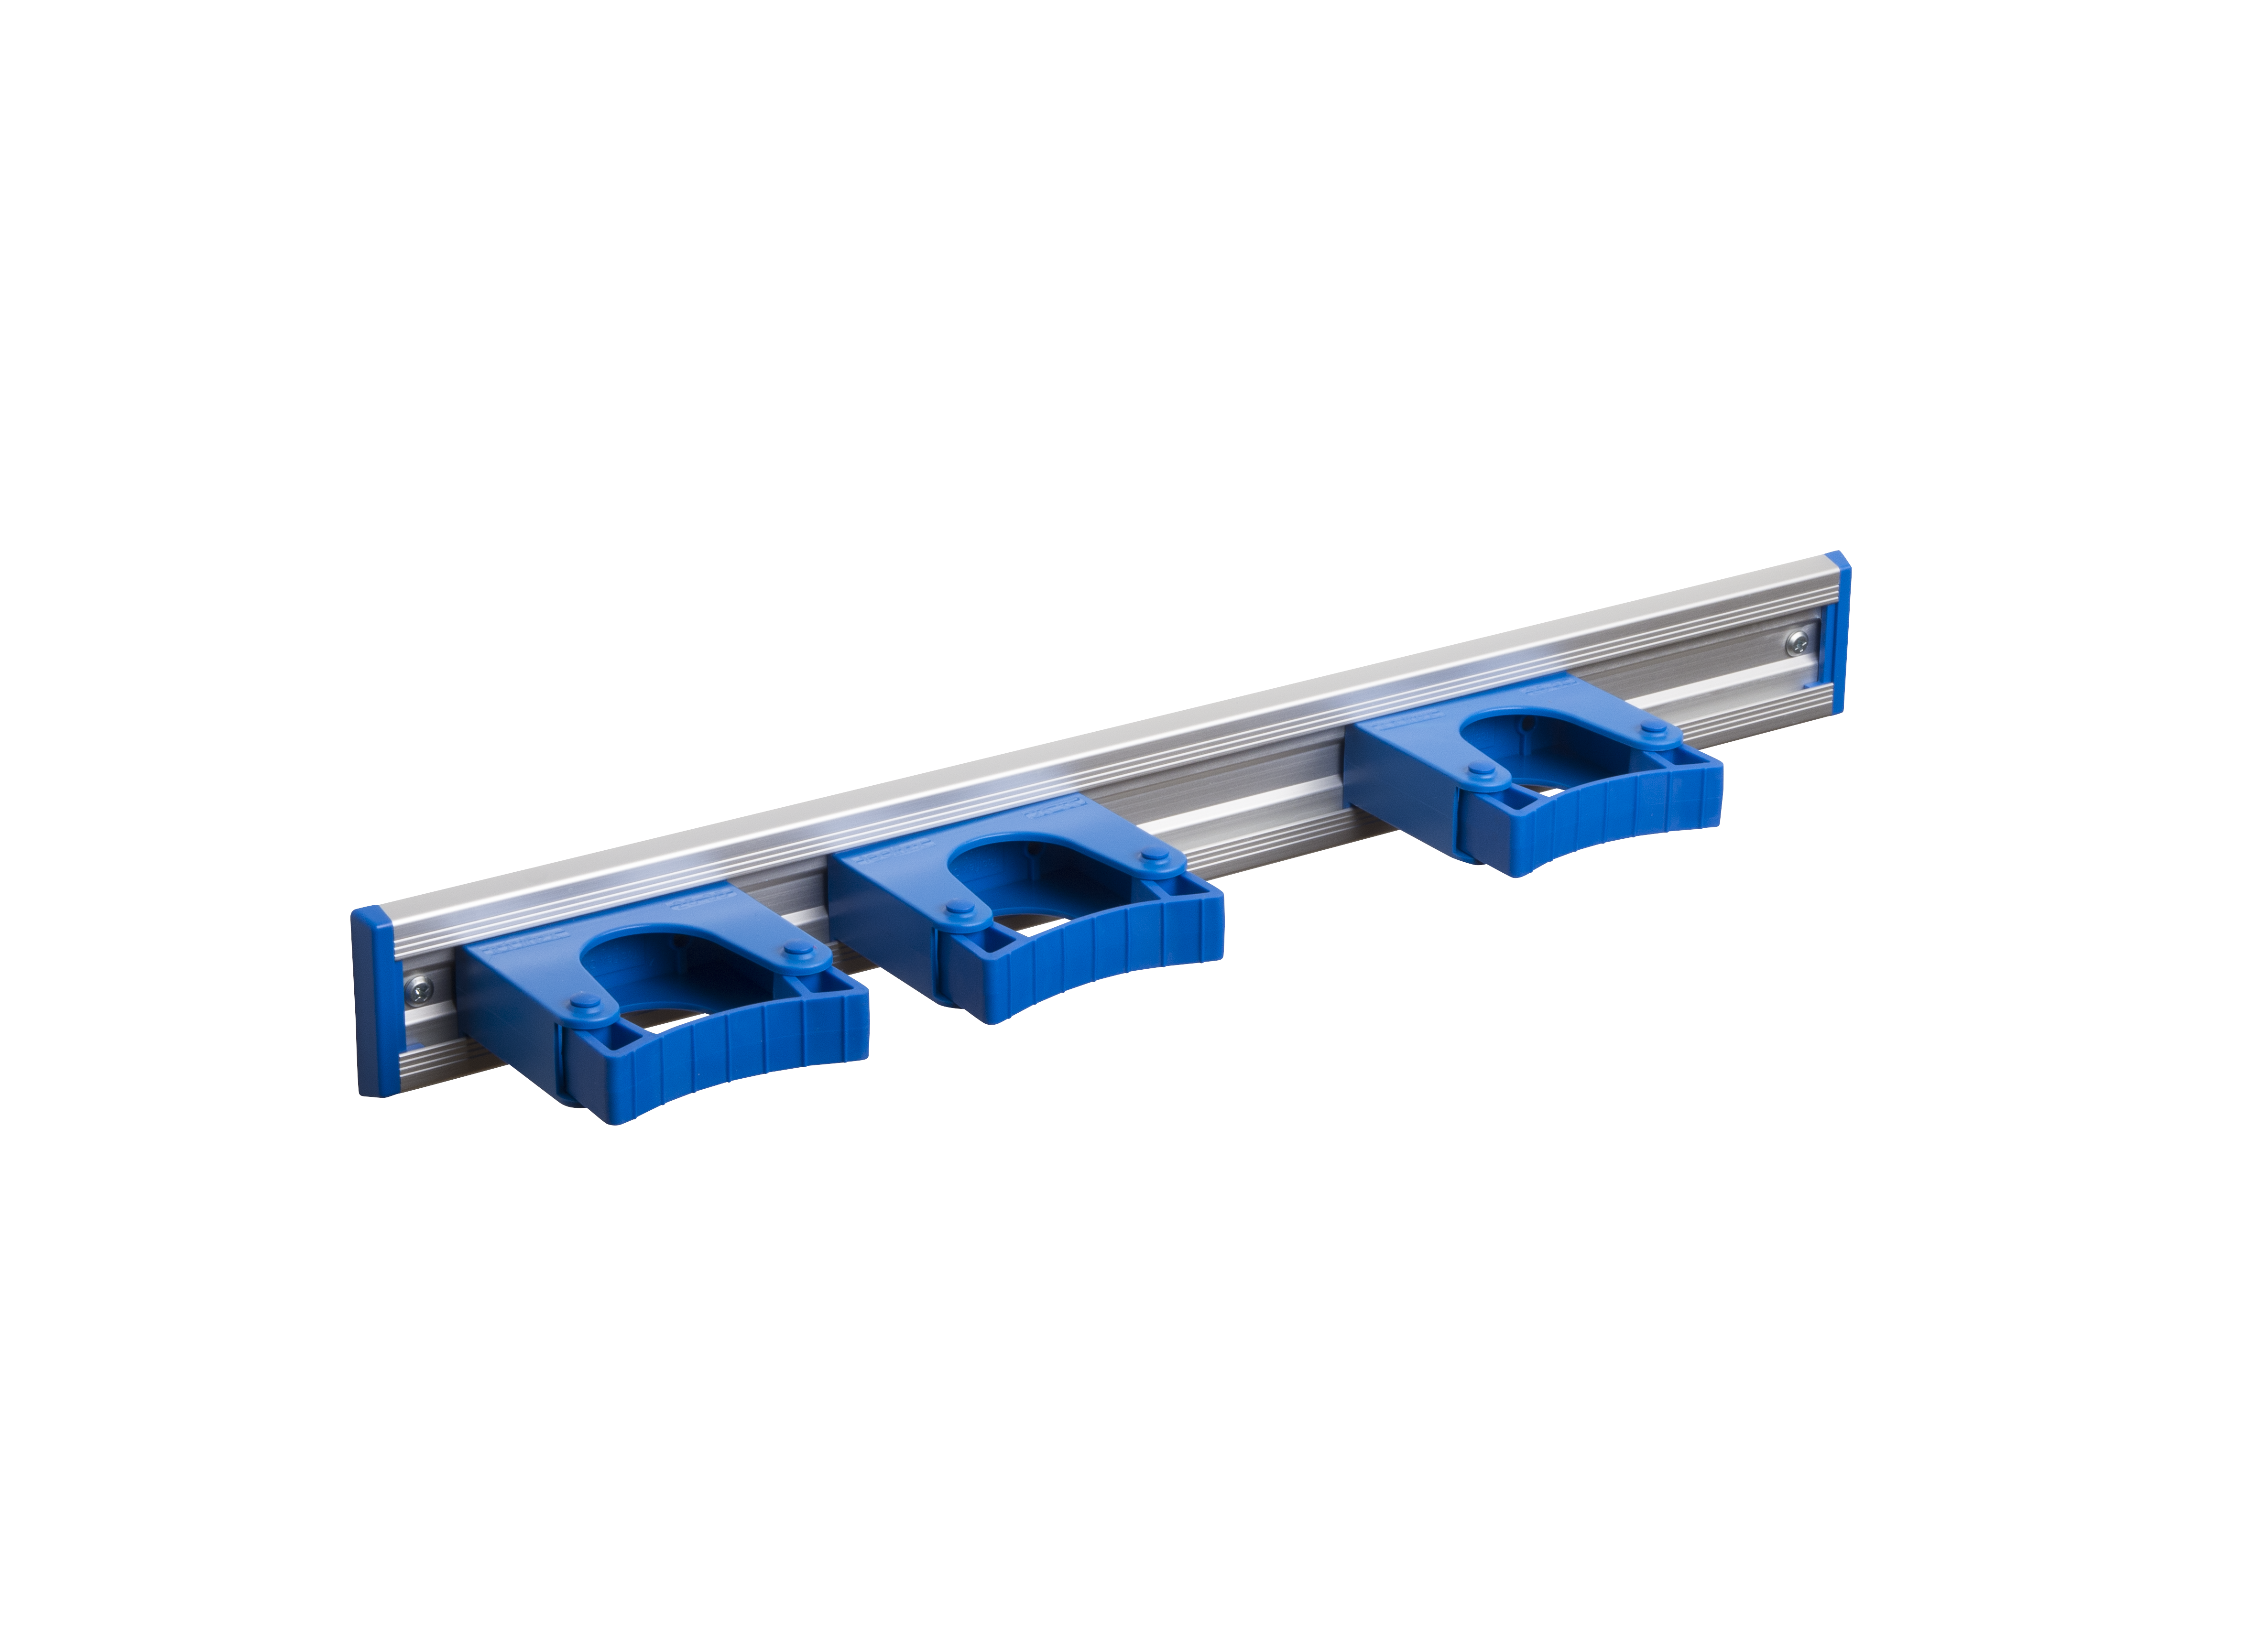 Toolflex Alu-Schiene 50 cm mit blauen Endstücken, bestückt mit 3 blauen Halterungen 25-35 mm